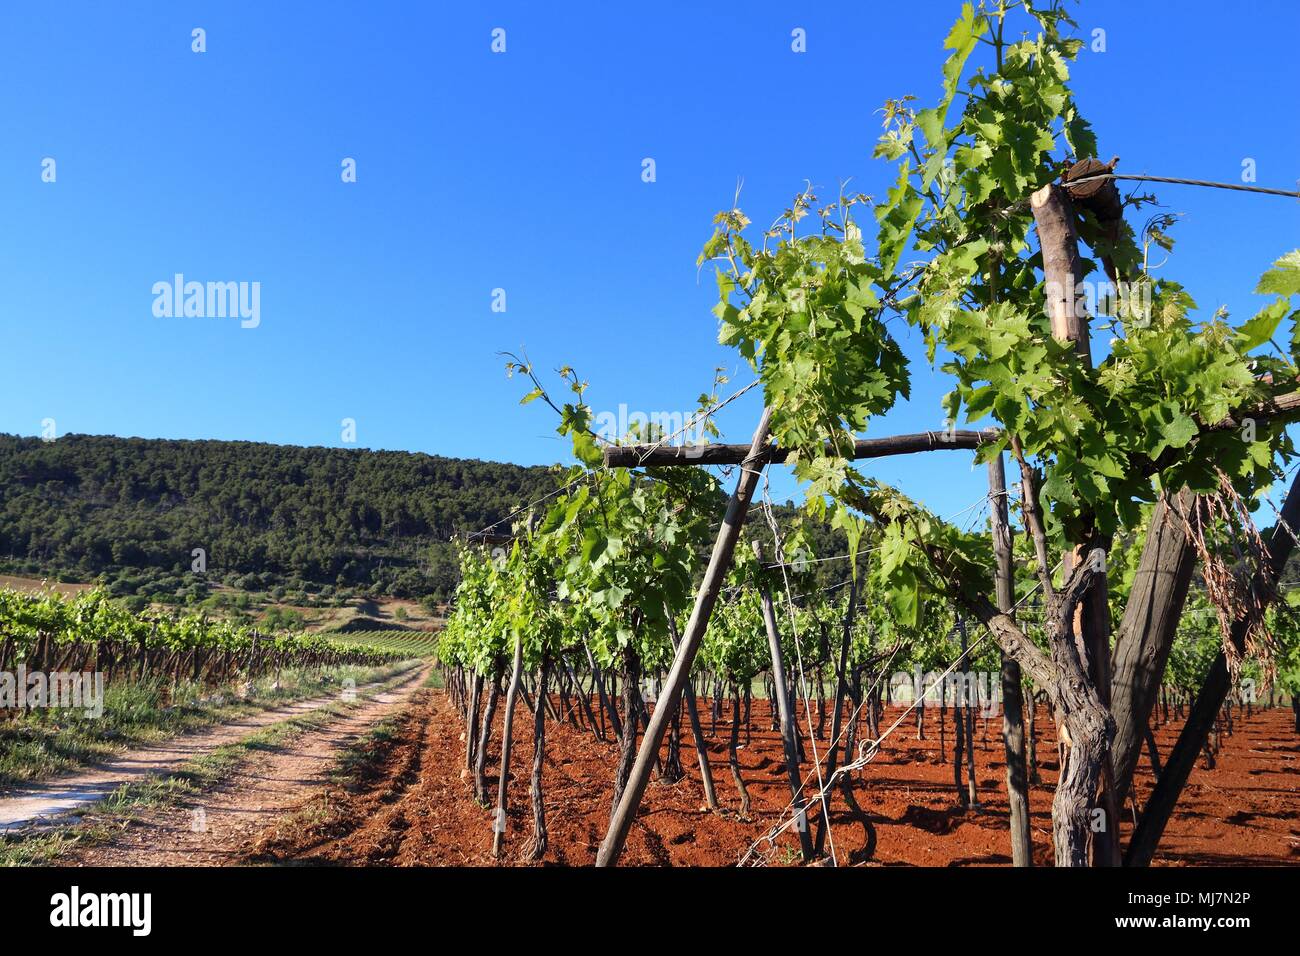 Puglia vigna - la vinificazione regione nella provincia di Bari, Italia. Foto Stock